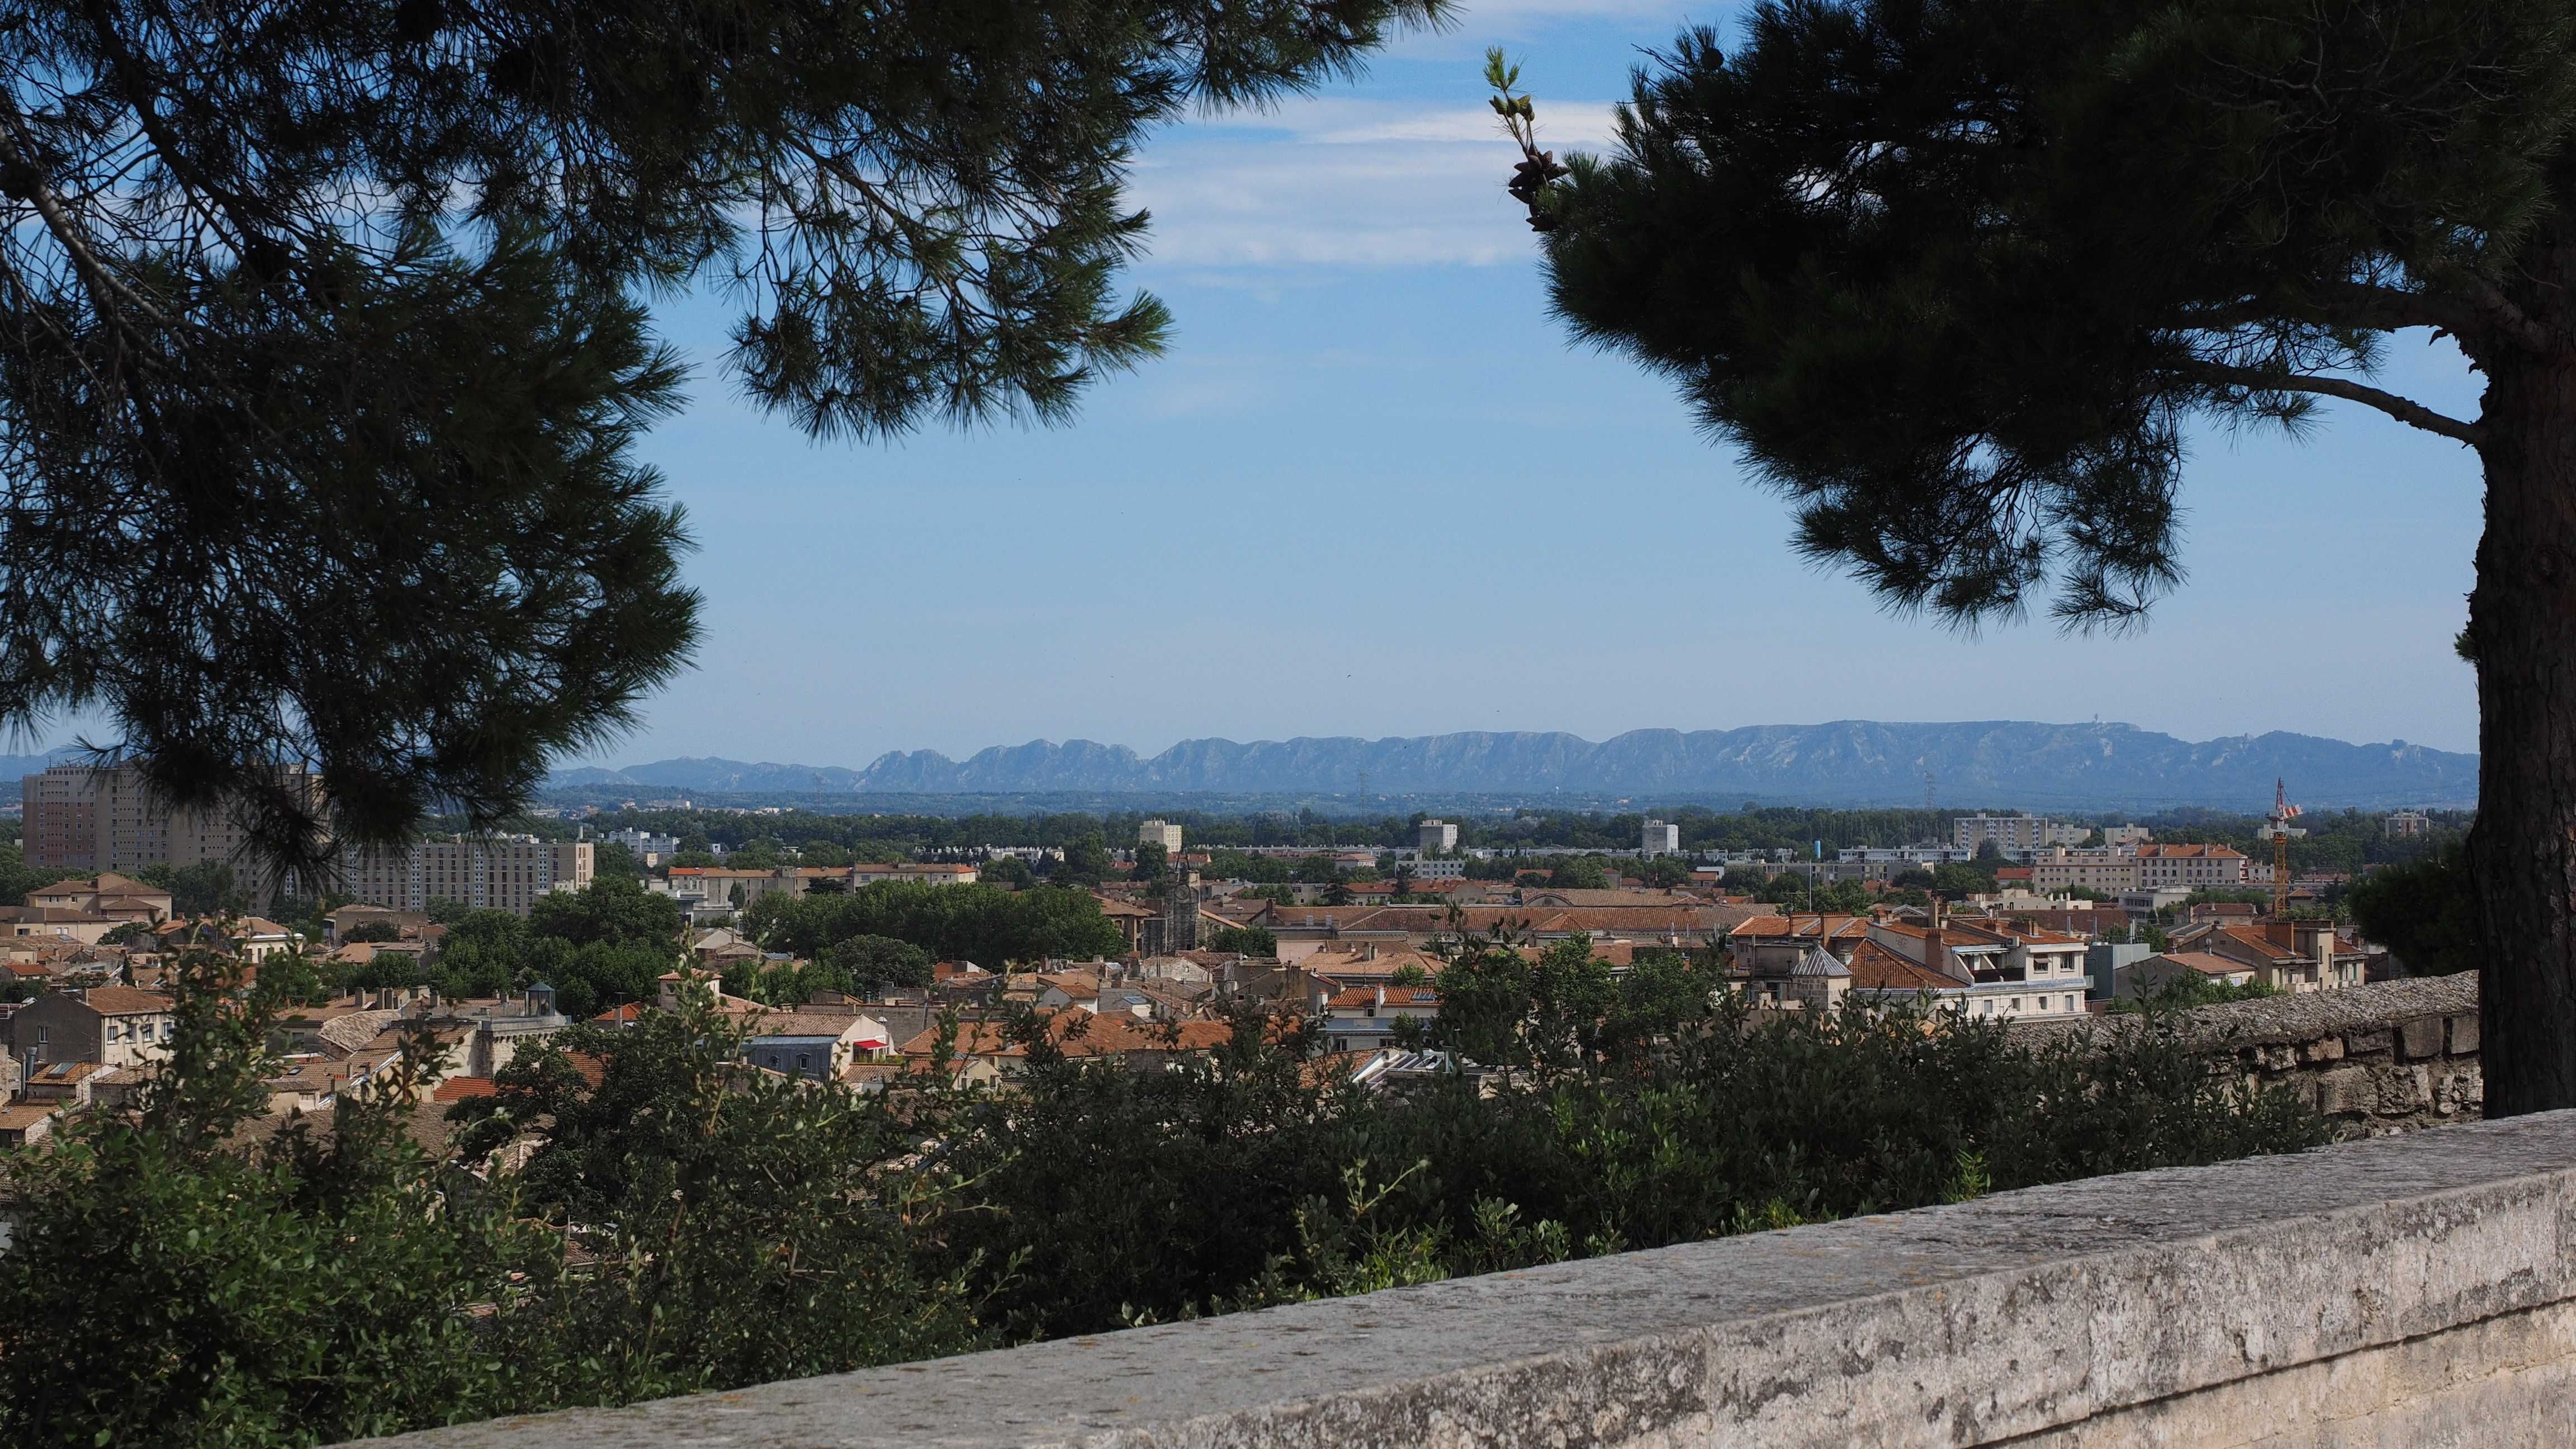 Rocher des Doms, Avignon